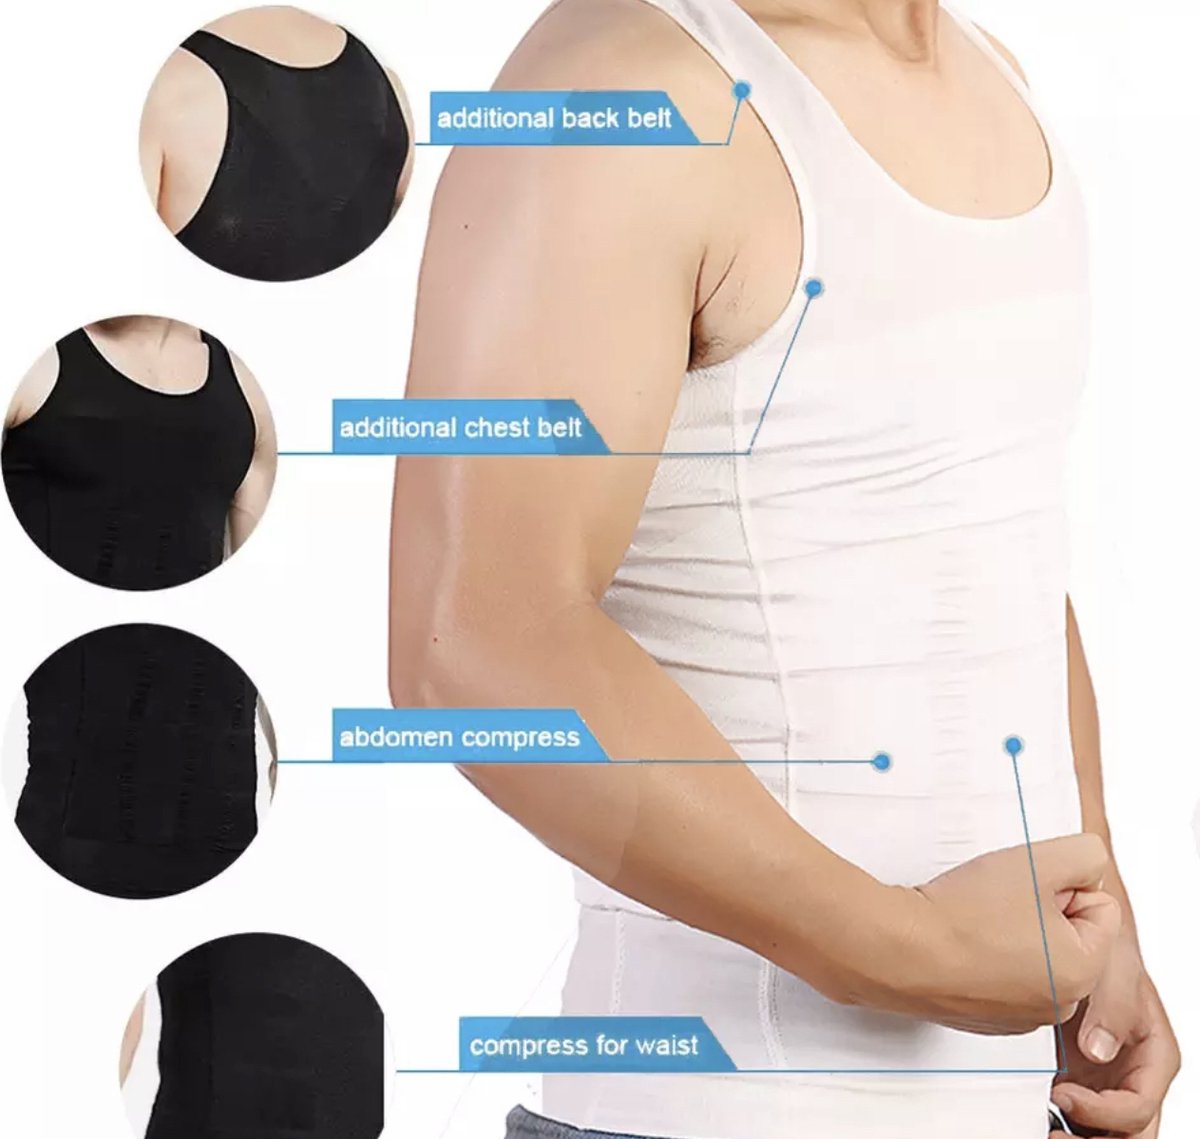 Chibaa - Premium Corrigerend Mannen Hemd - Ondersteuning - Body Buik Shapewear Shirt - Correctie Hemd - Buik weg - Buik verbergen - Strak lichaam - Wit - XXL